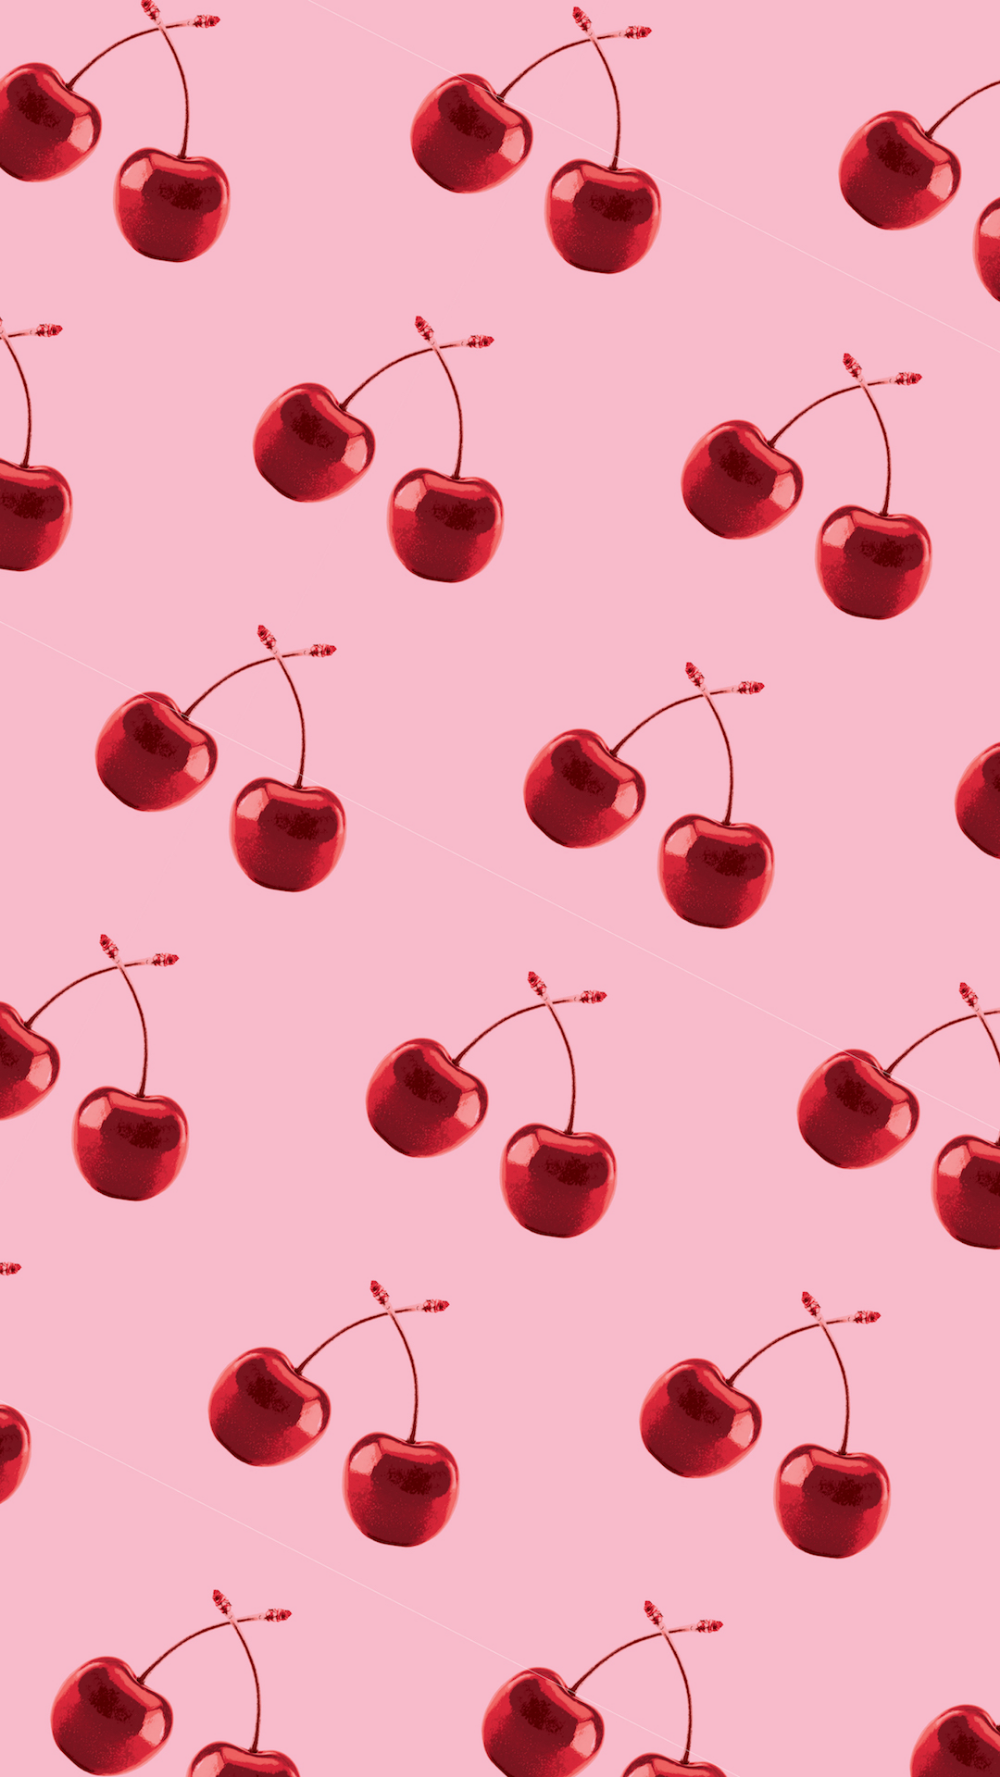 Cherry desktop wallpaper cute background  Free Vector  rawpixel